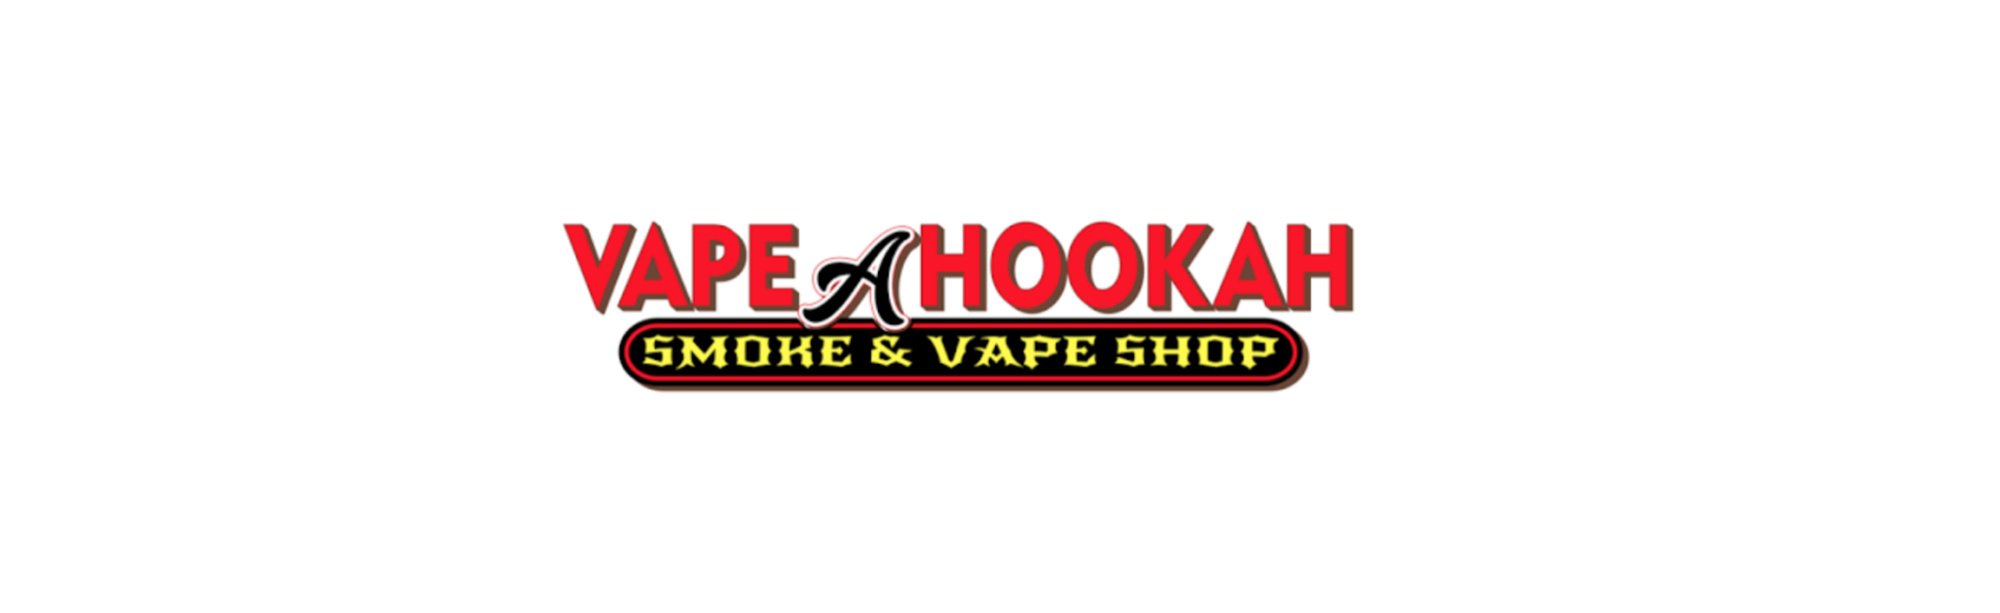 image of vape a hookah smoke & vape shop in mesa az